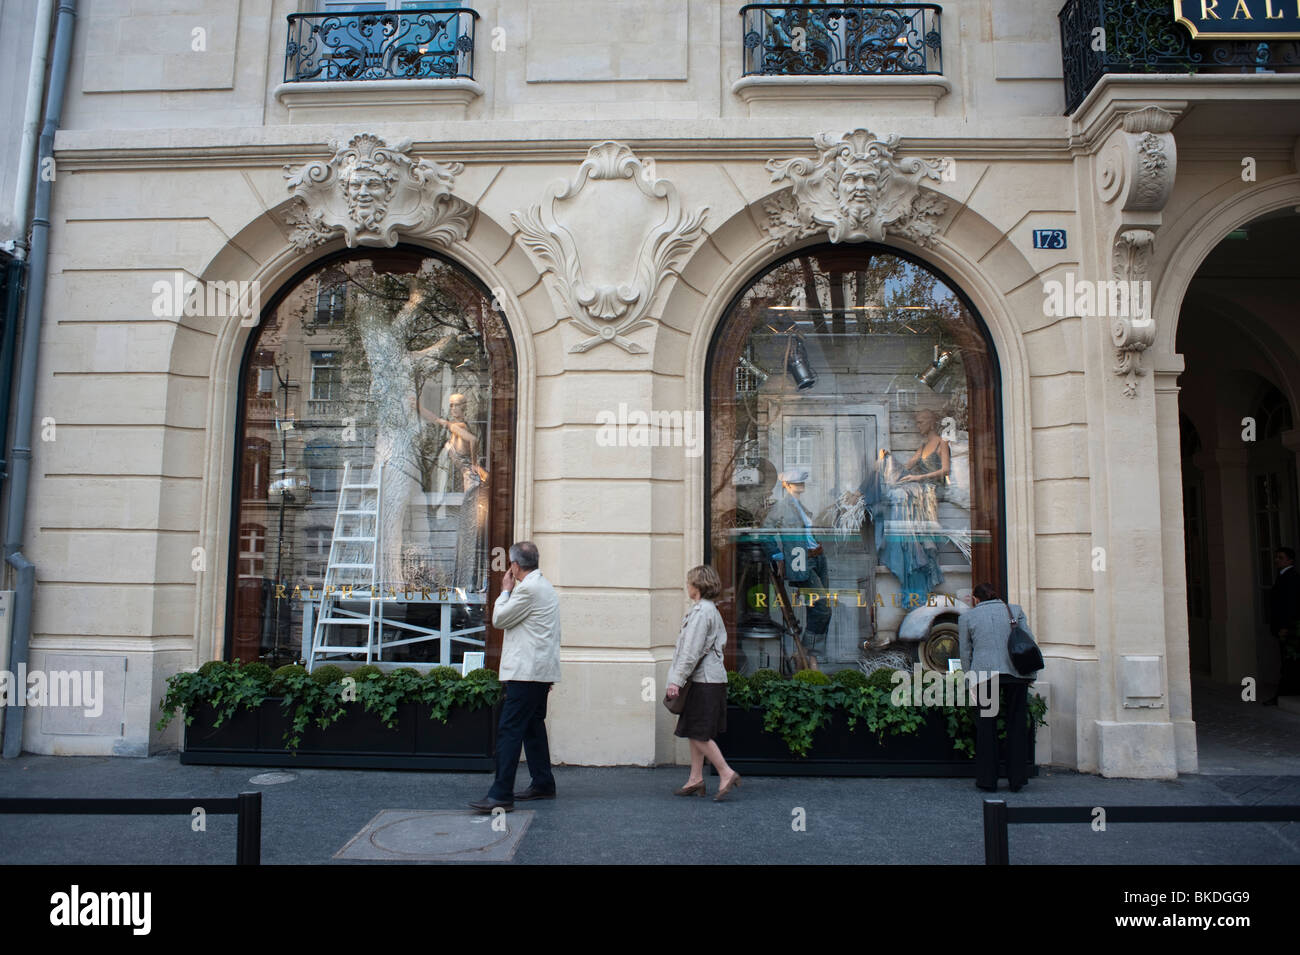 People Window Shopping, Ralph Lauren Superstore, "Saint Germain des Prés",  Paris, Shop Front Façade, Store Front Windows, mode labels Stock Photo -  Alamy